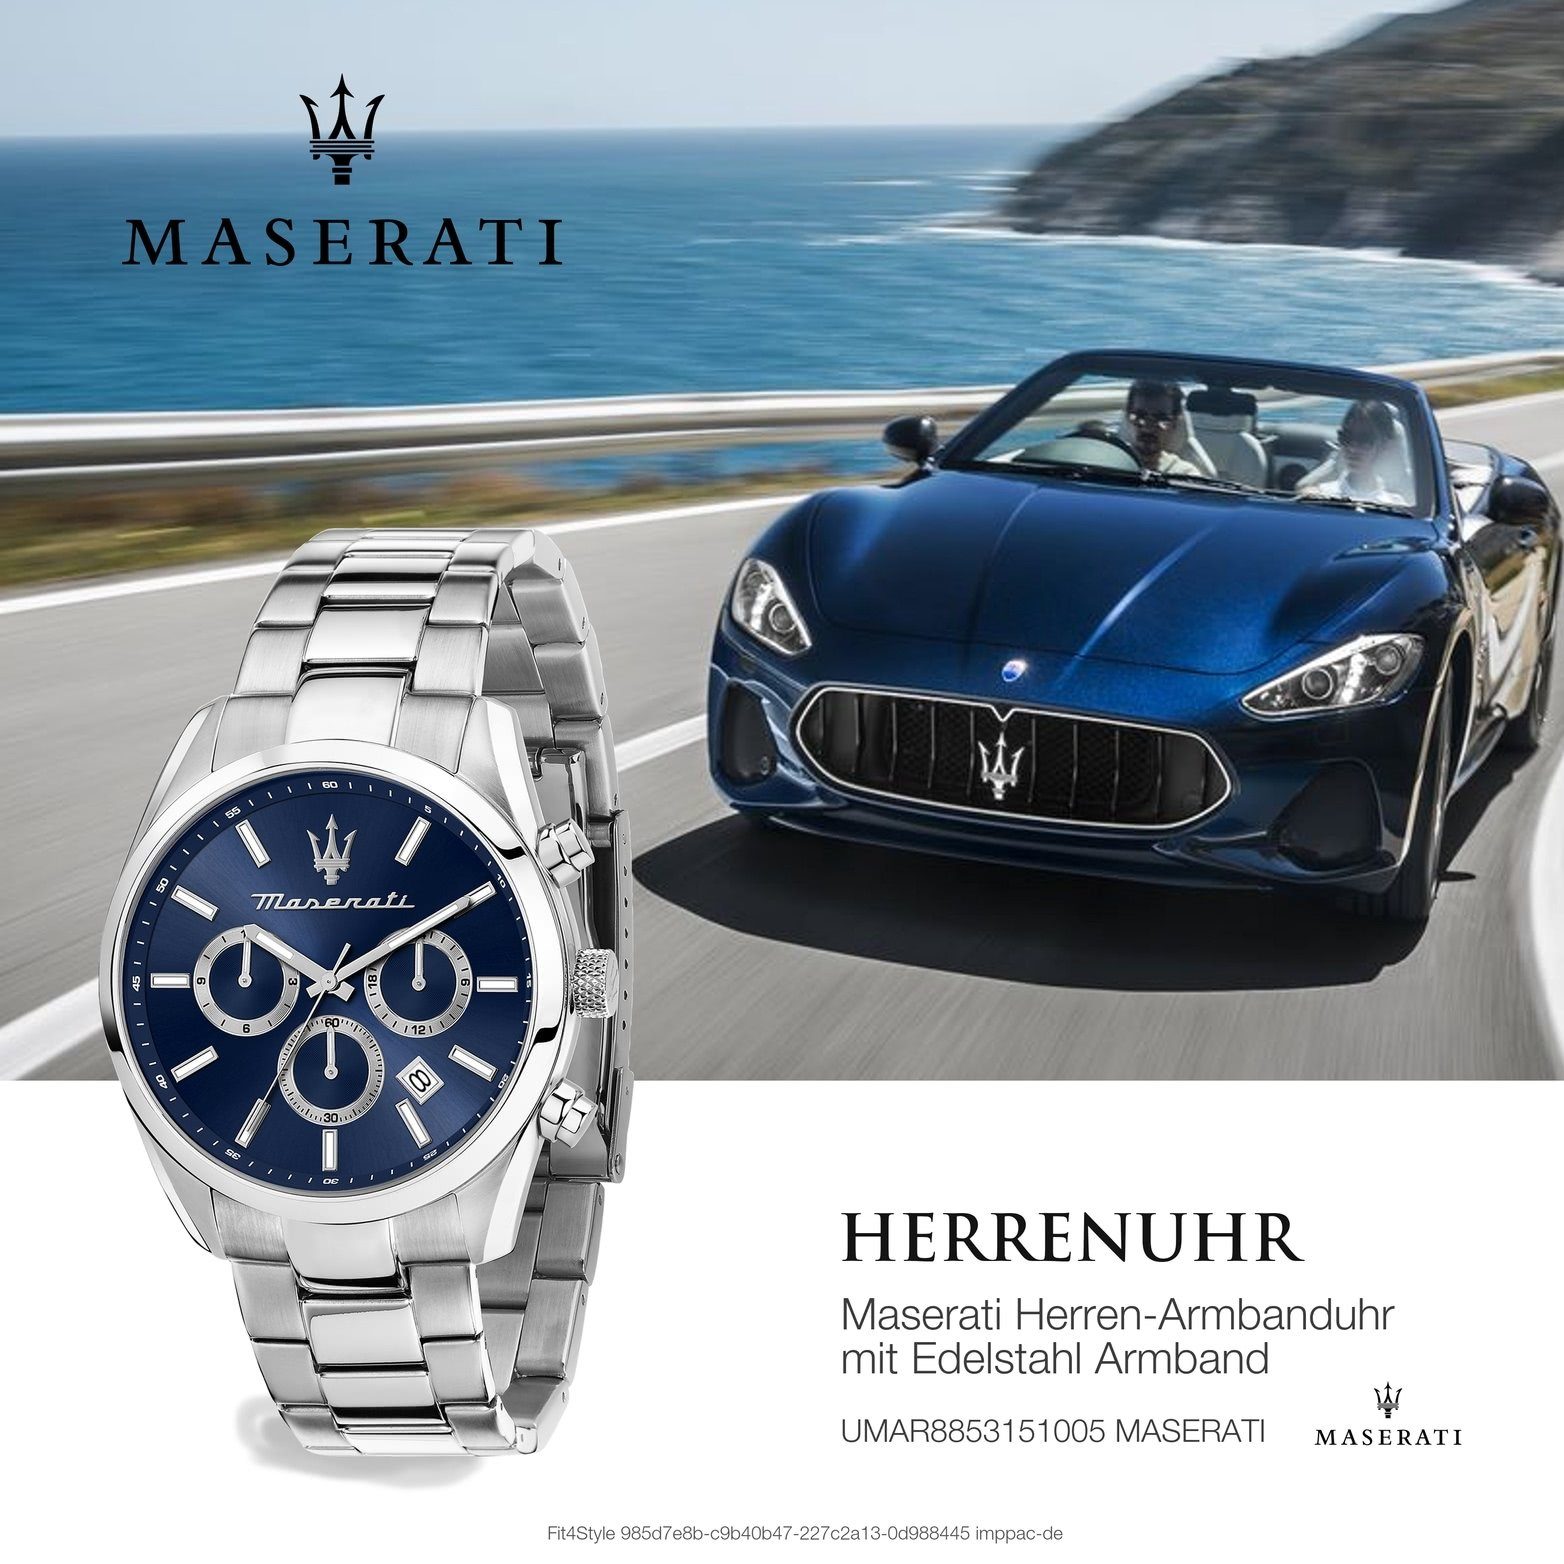 Multifunktionsuhr Herrenuhr MASERATI Edelstahlarmband, rundes Herrenuhr Maserati Attrazione, 43mm) blau Gehäuse, groß (ca.